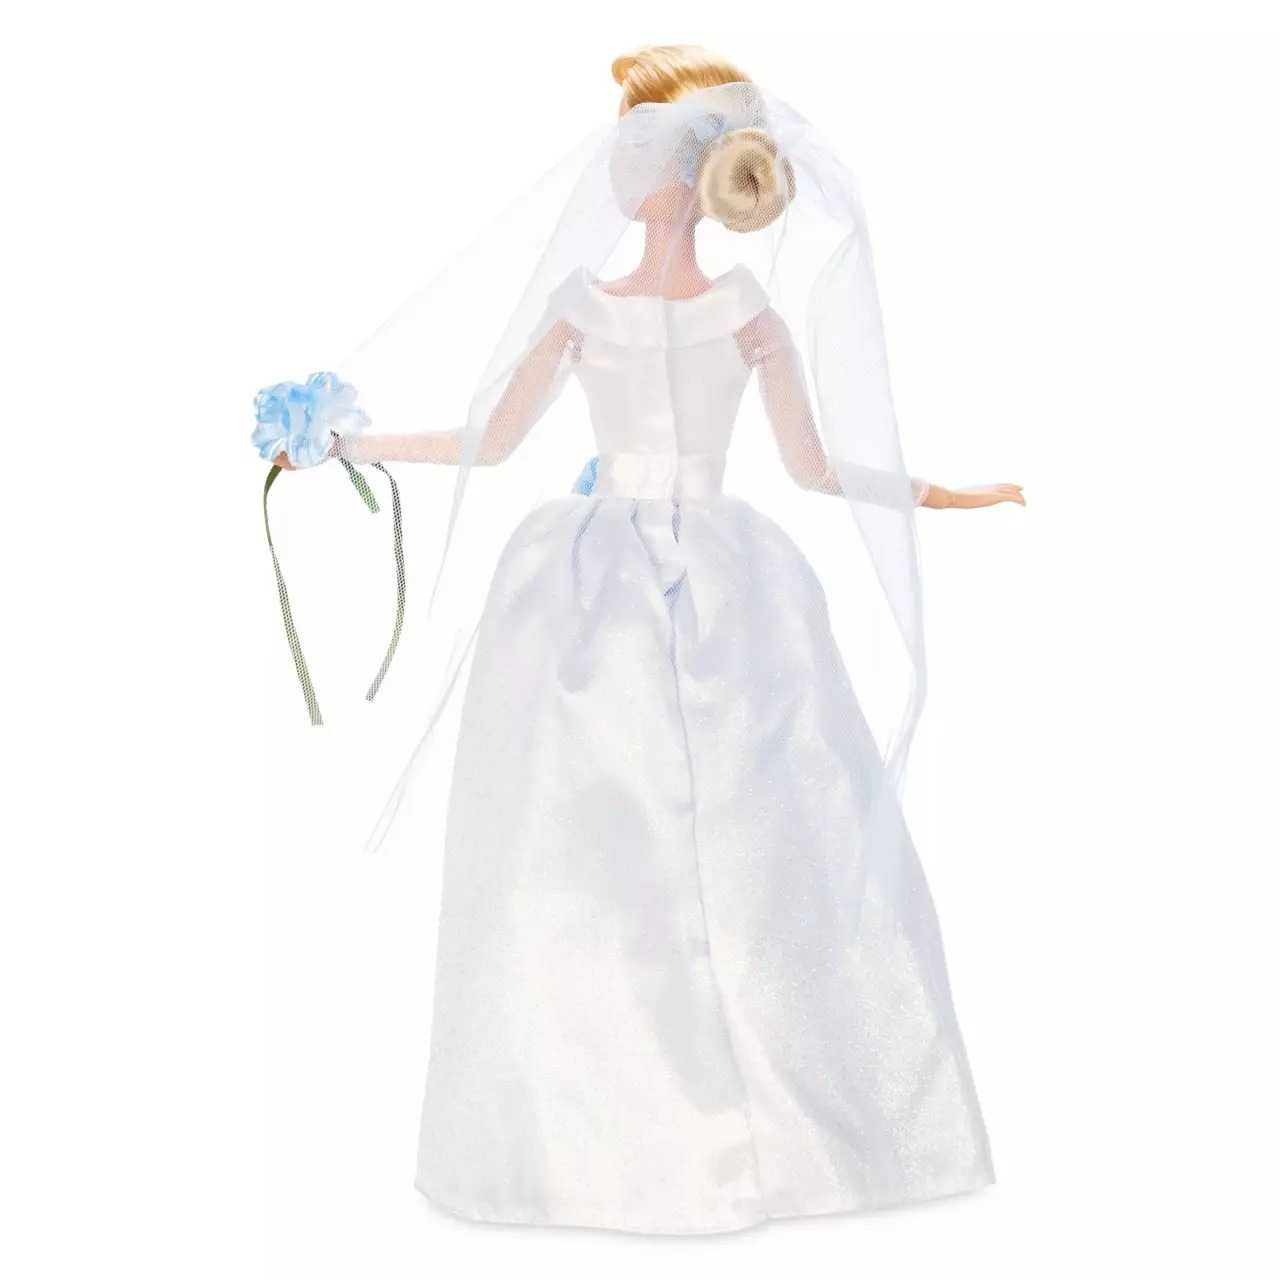 Золушка и Принц Чарминг -свадебный  набор кукол